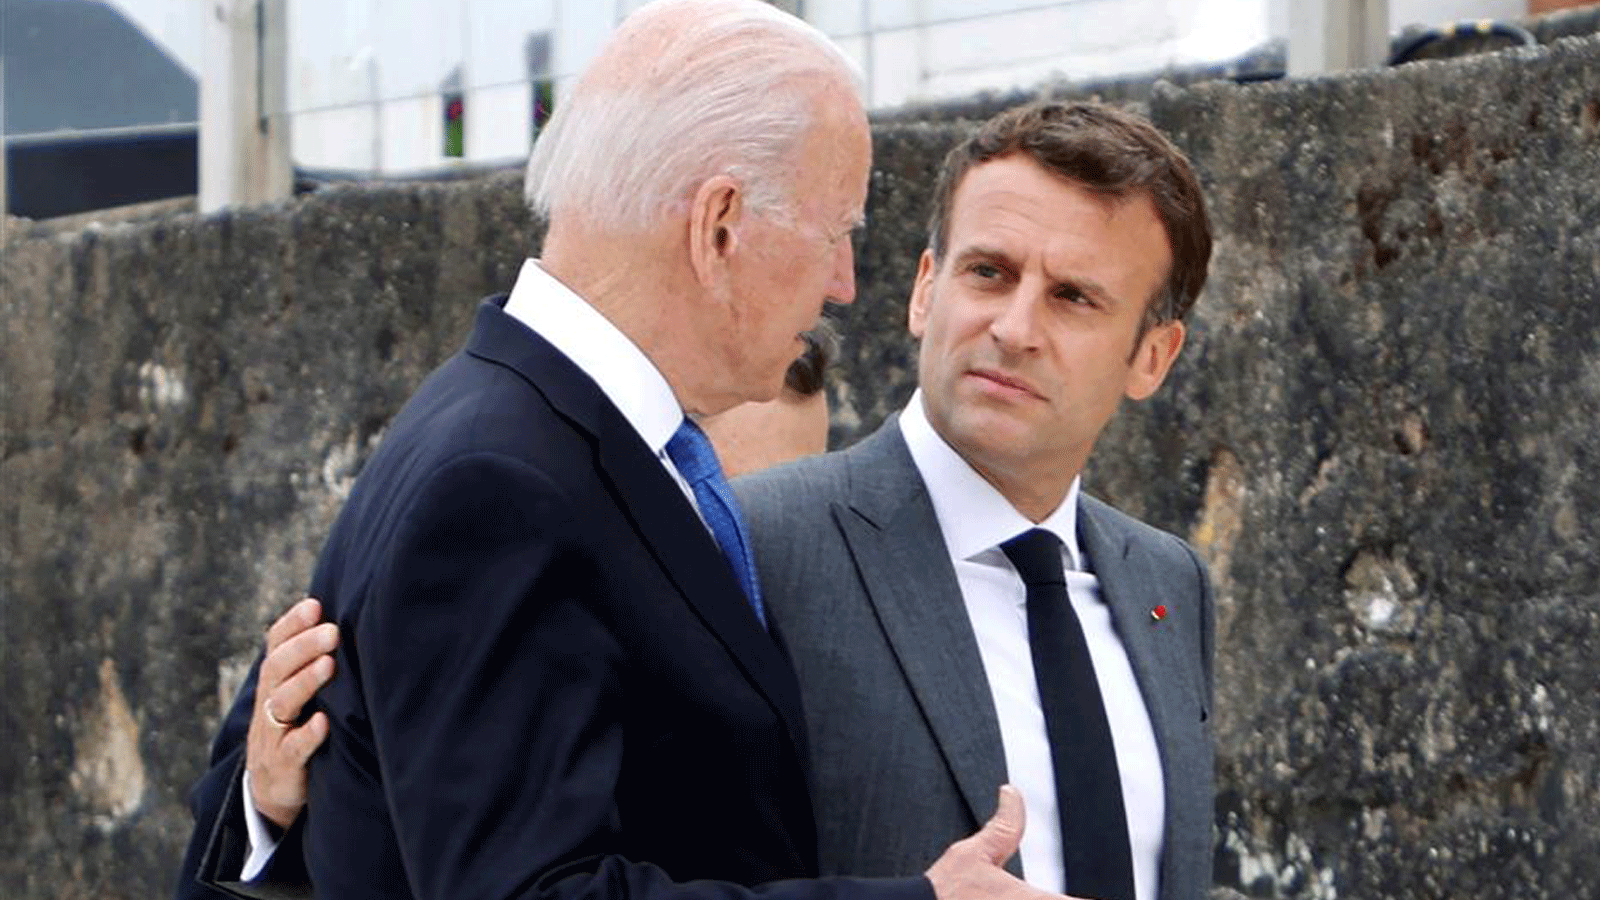 الرئيس الأميركي جو بايدن (إلى اليسار) والرئيس الفرنسي إيمانويل ماكرون يتحدثان بعد الصورة العائلية في بداية قمة مجموعة السبع في خليج كاربيس، كورنوال. في 11 حزيران/ يونيو 2021